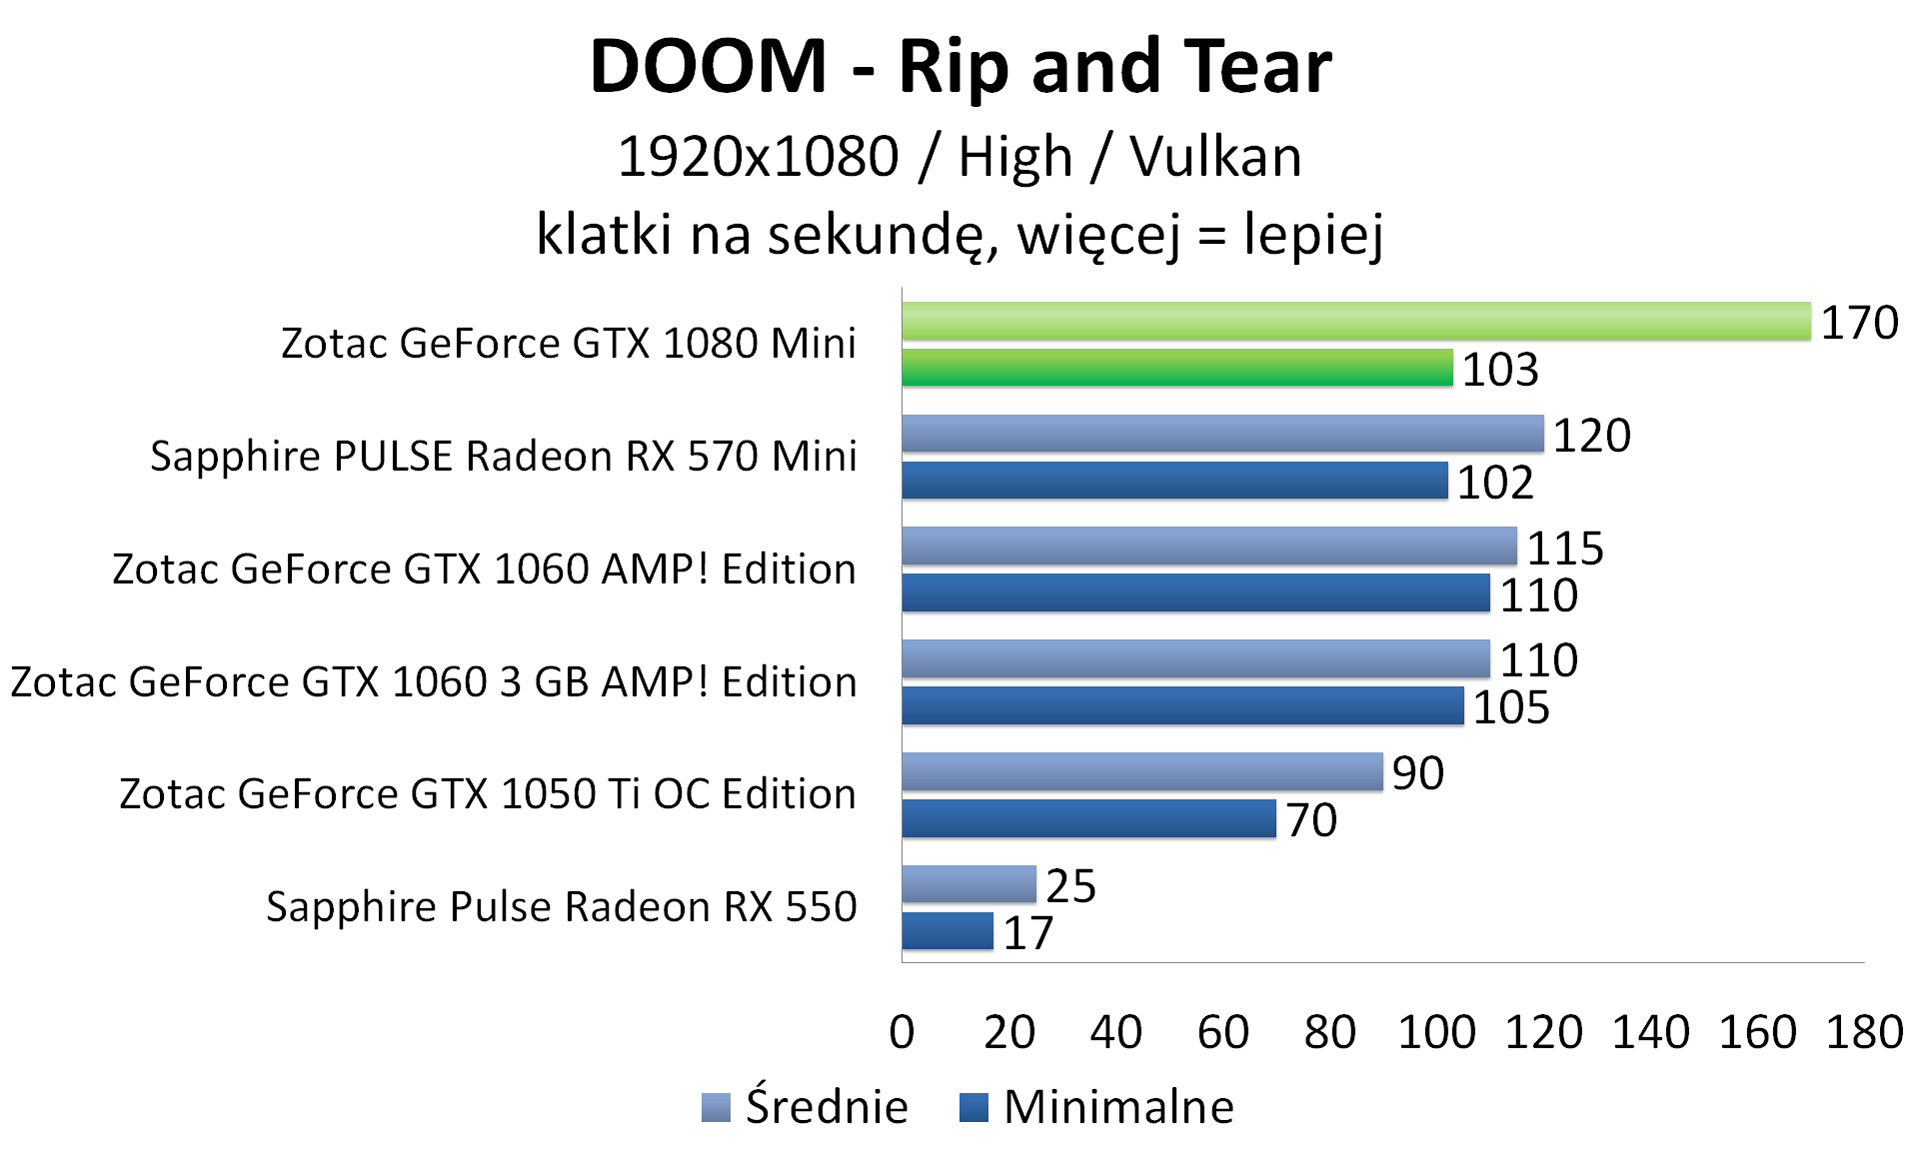 Zotac GeForce GTX 1080 Mini - DOOM - Vulkan